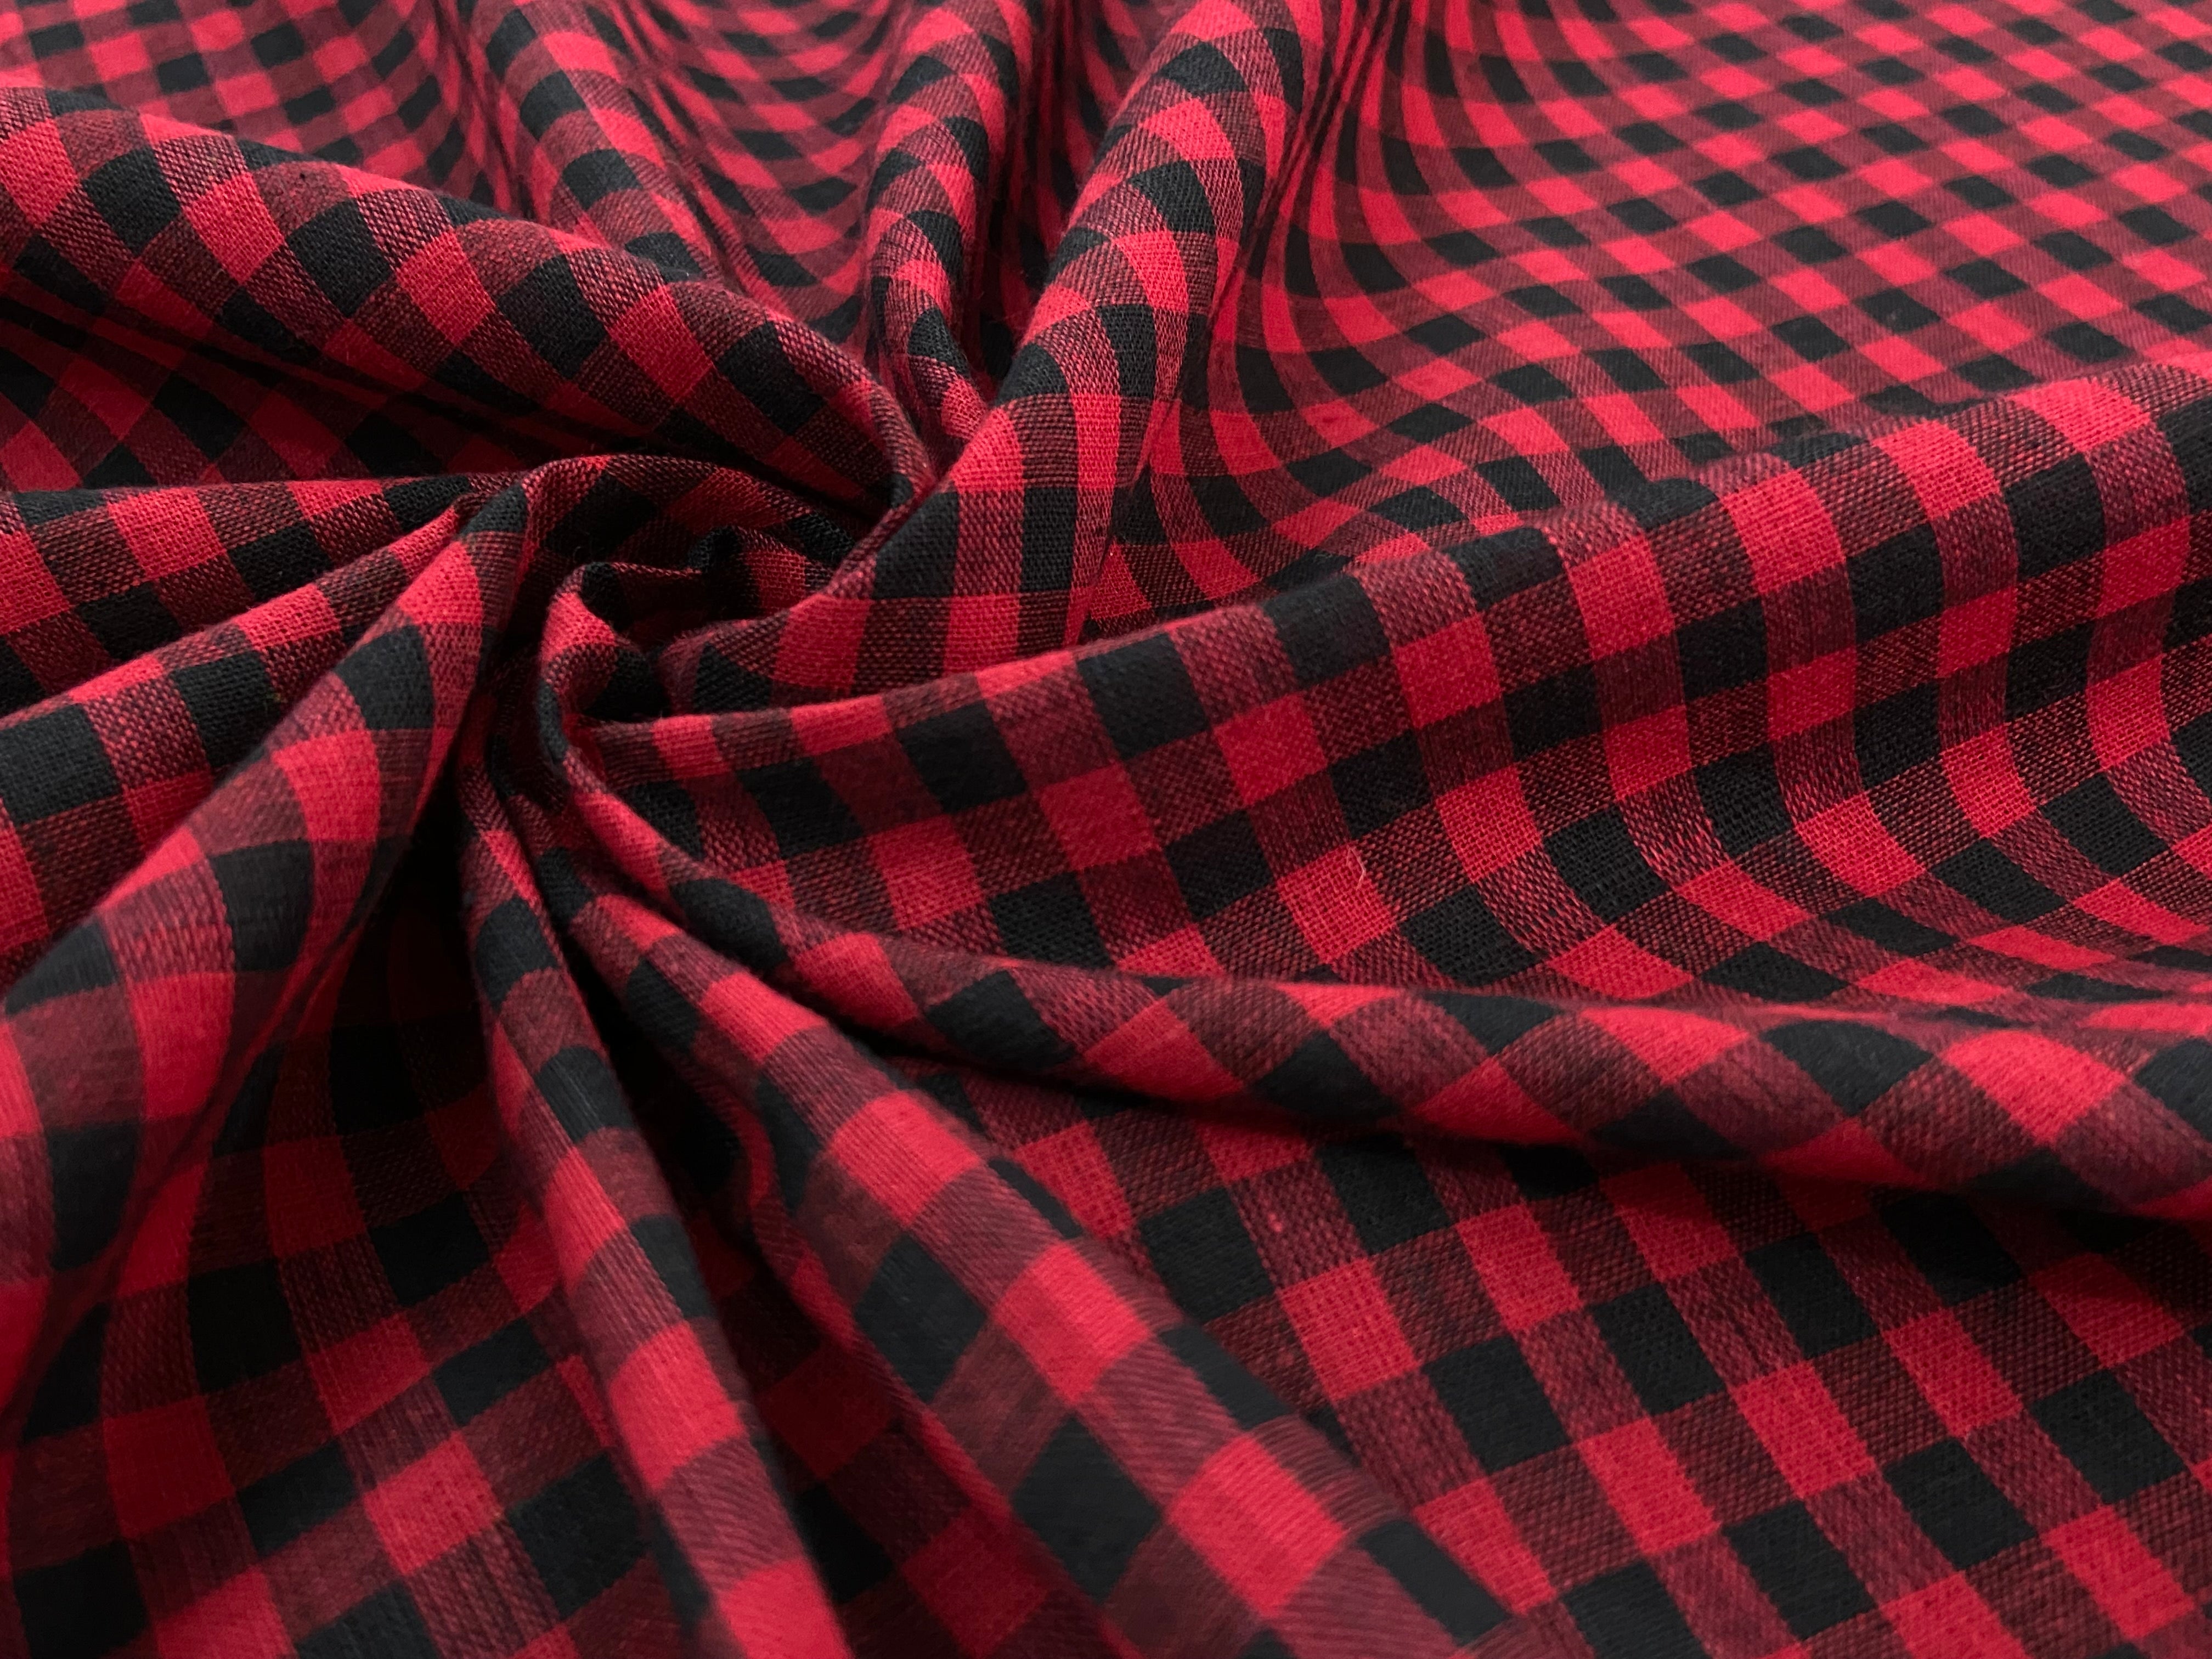 Fabric #014